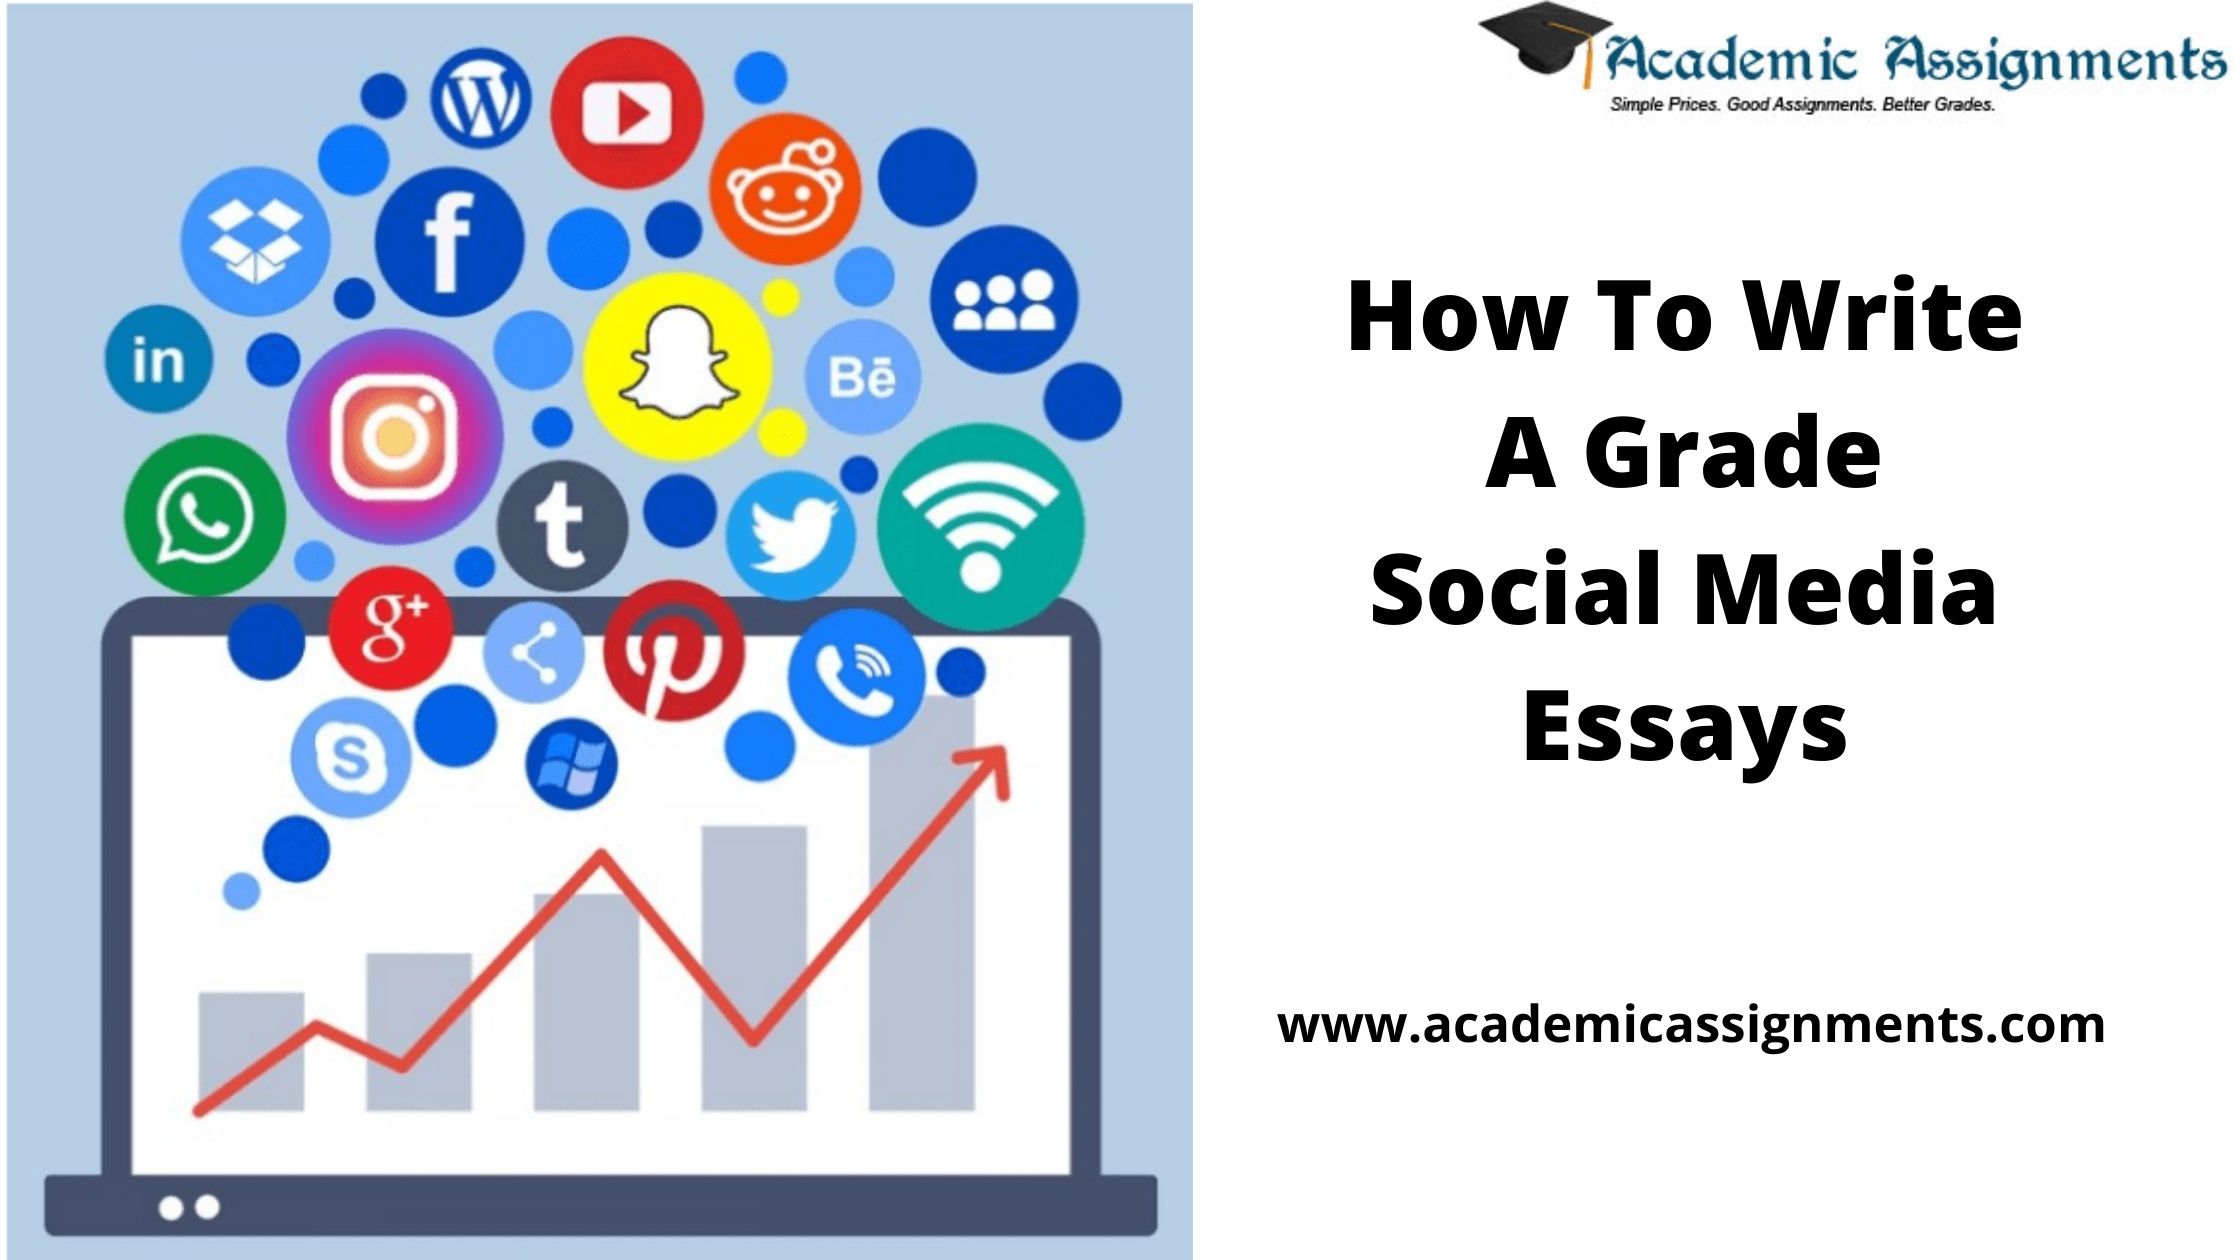 How To Write A Grade Social Media Essays